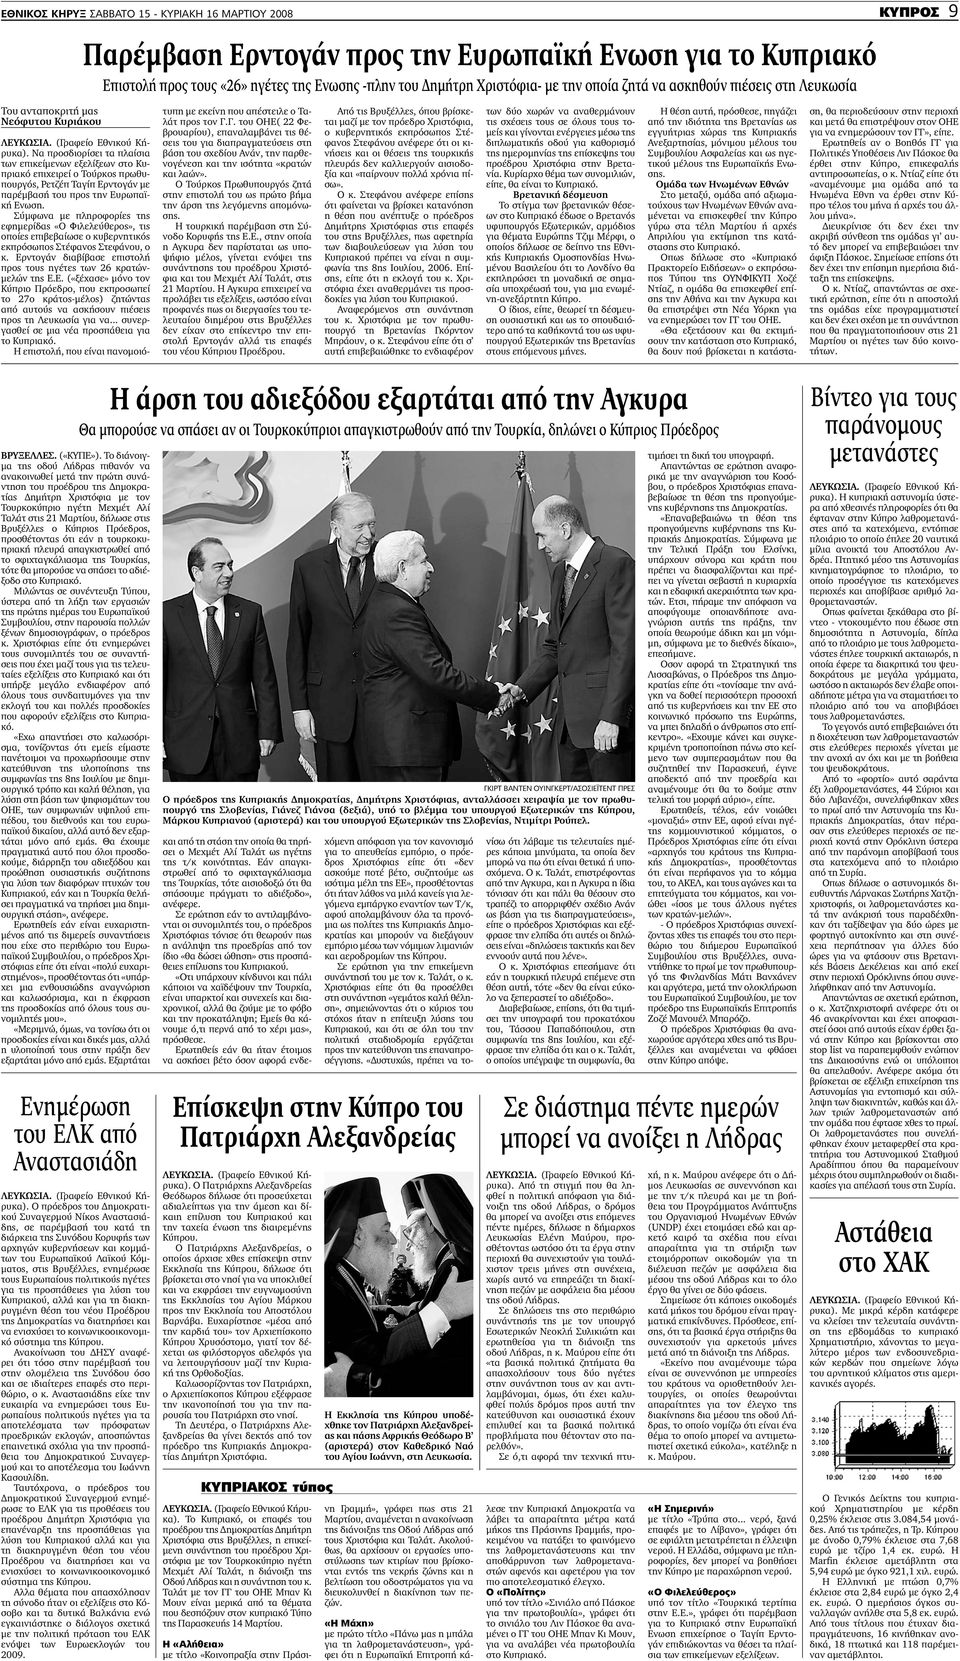 Nα προσδιορίσει τα πλαίσια των επικείµενων εξελίξεων στο Κυπριακό επιχειρεί ο Τούρκος πρωθυπουργός, Ρετζέπ Ταγίπ Ερντογάν µε παρέµβασή του προς την Ευρωπαϊκή Ενωση.